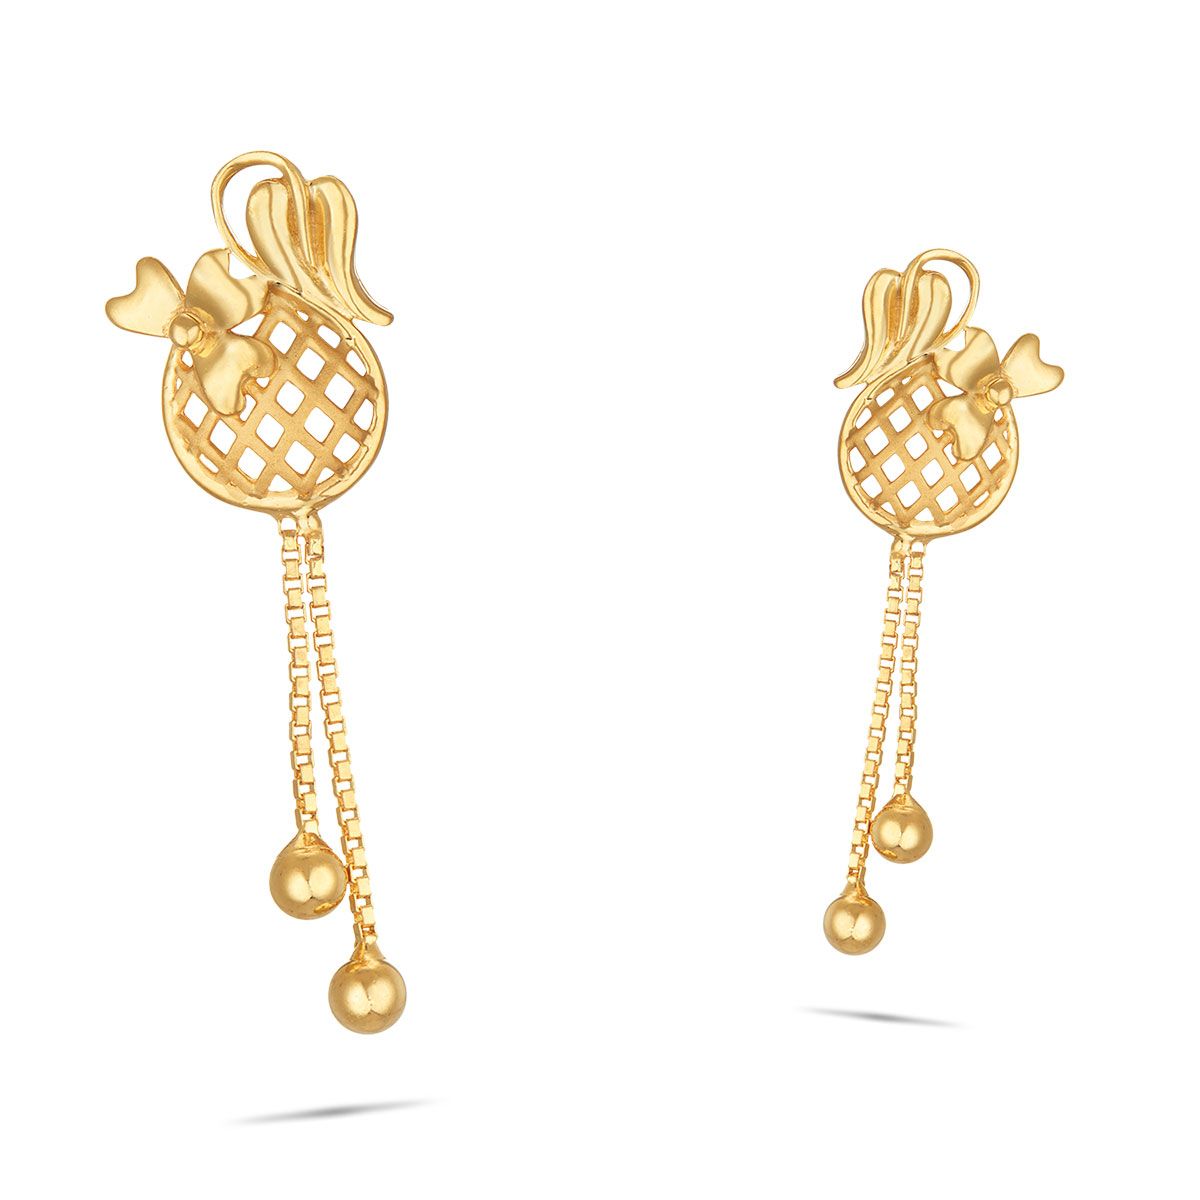 DREAMJWELL  Antique gold designer rond tops Earrings dj34412  dreamjwell